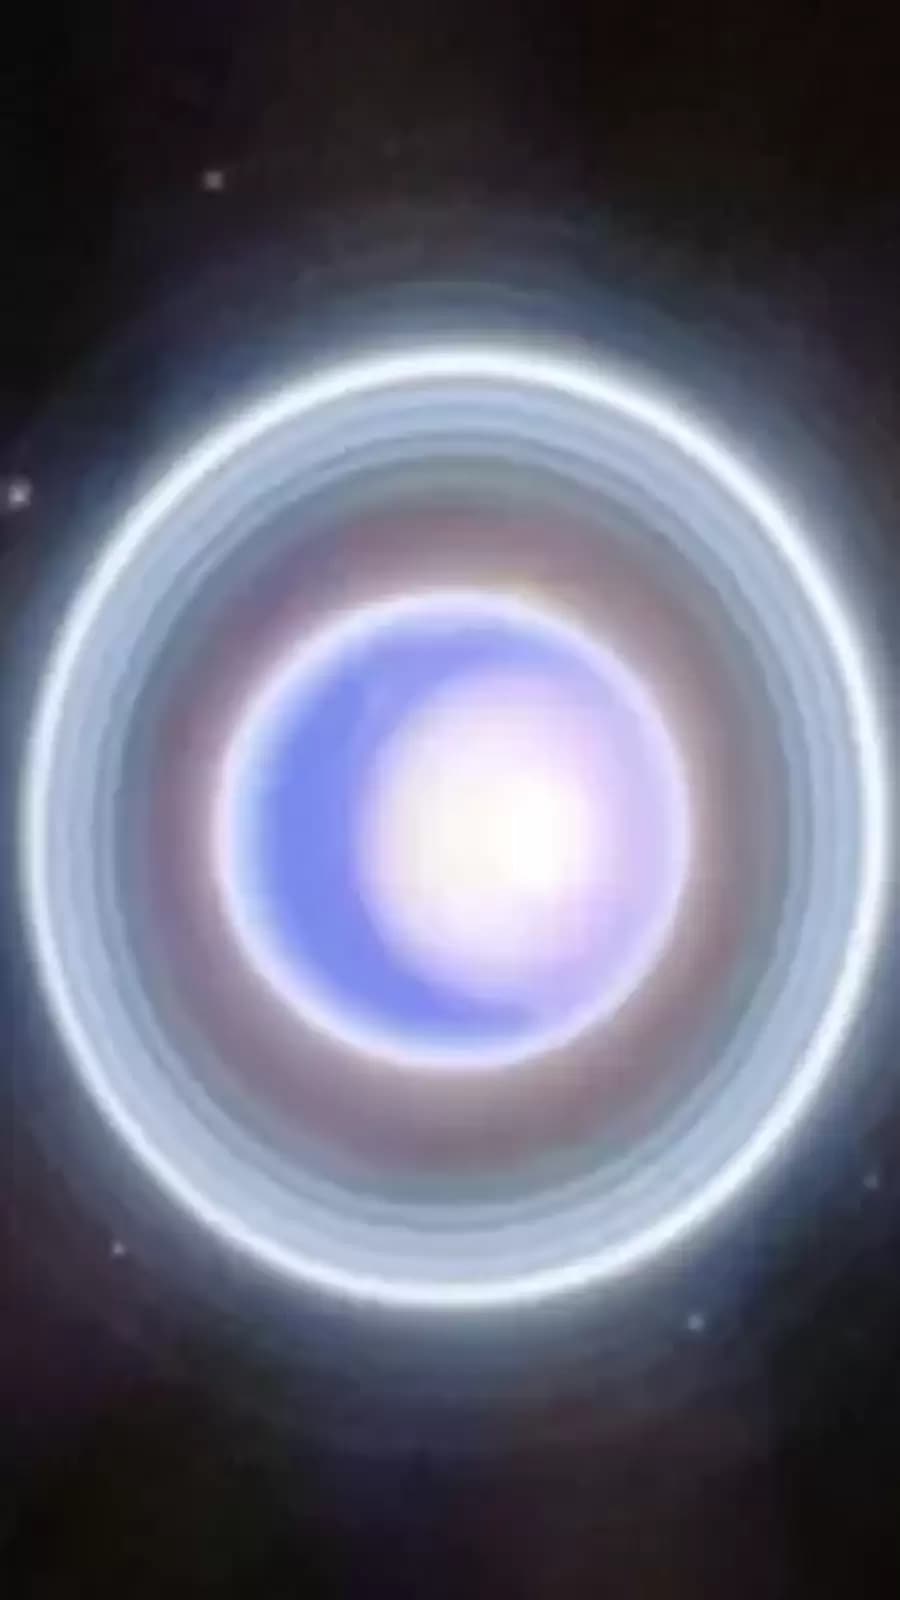 Hubble sees Uranus' rings on edge | Astronomy.com